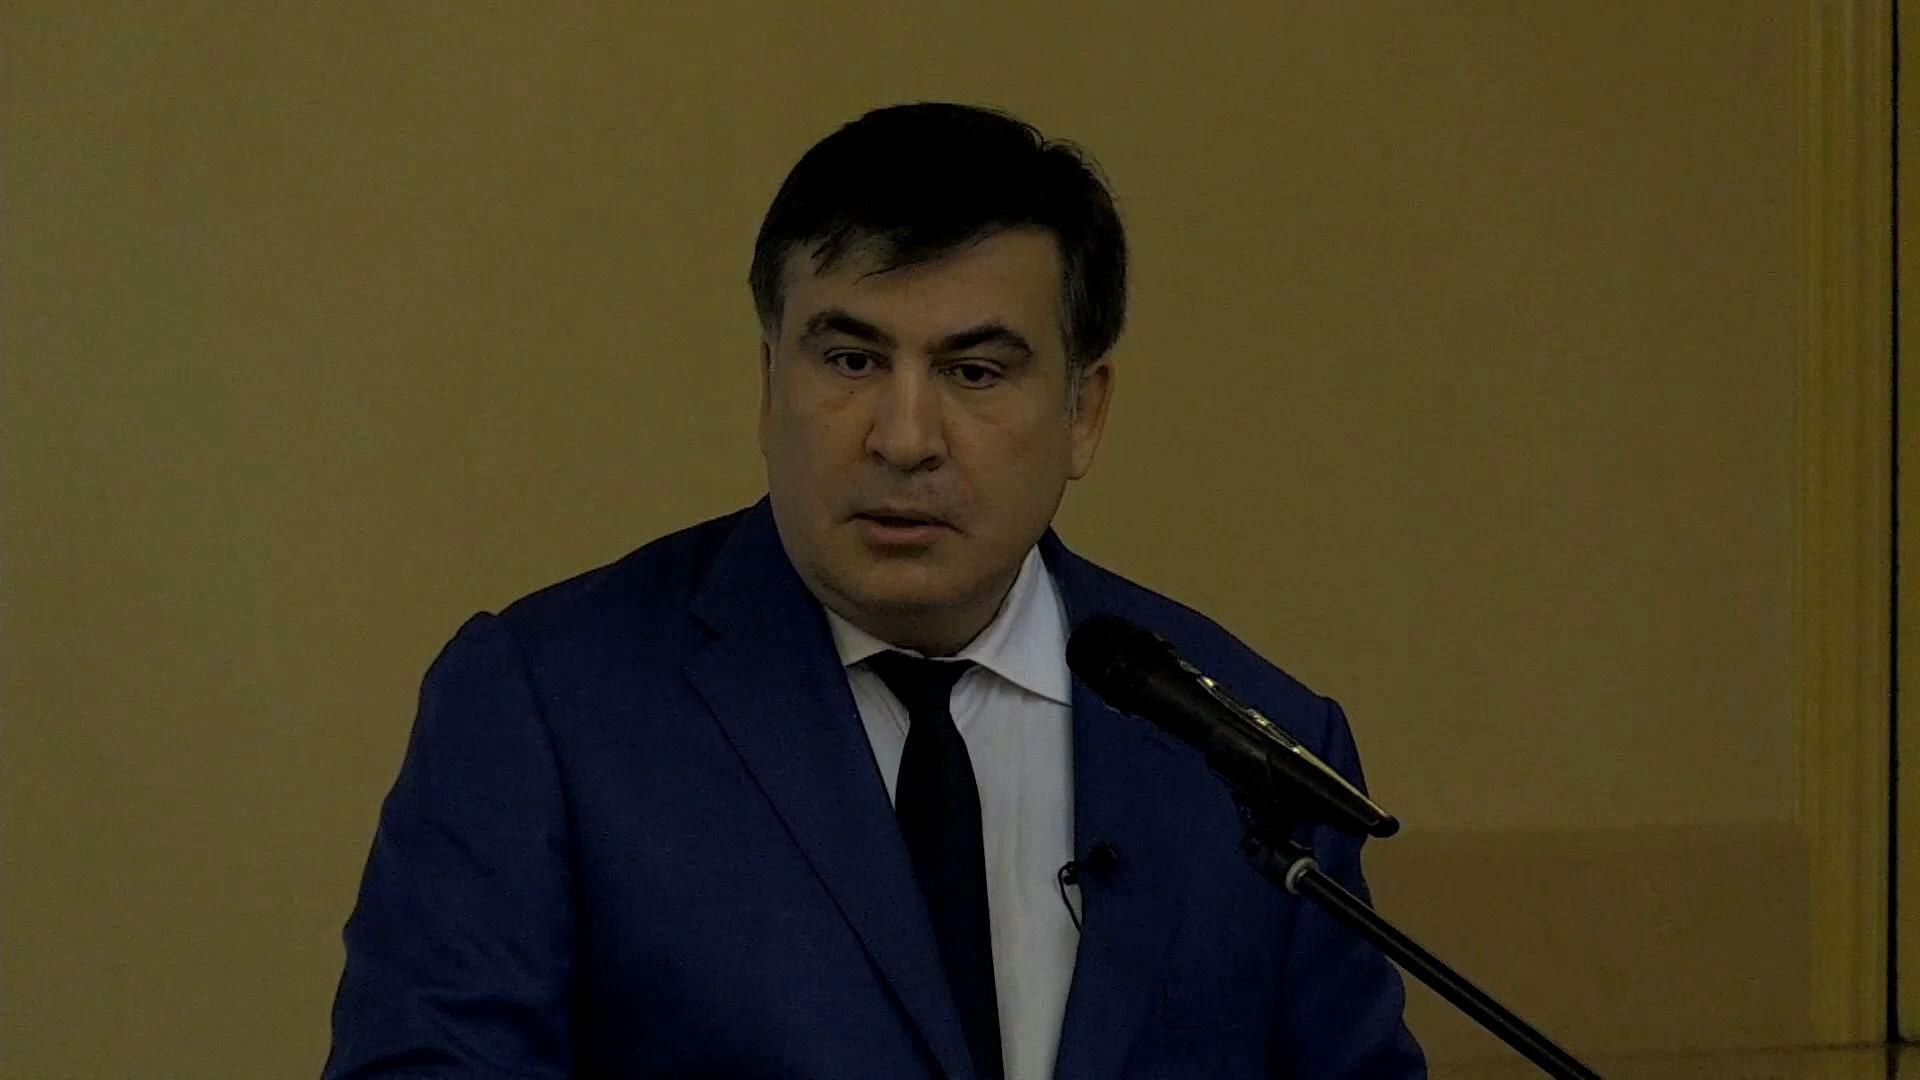 Саакашвили назвал имена главных коррупционеров страны